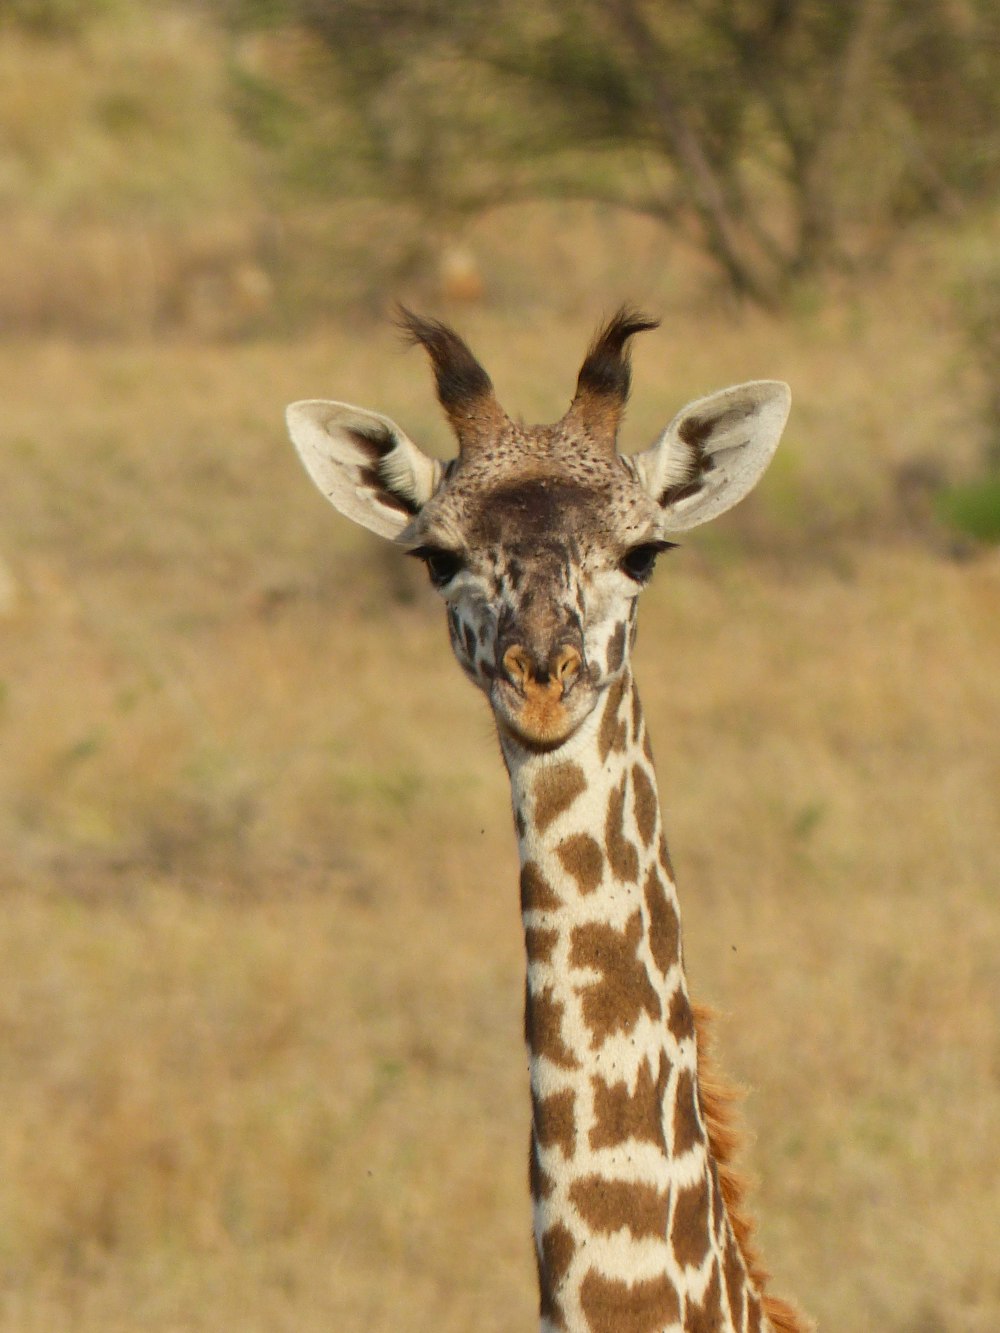 a close up of a giraffe in a field